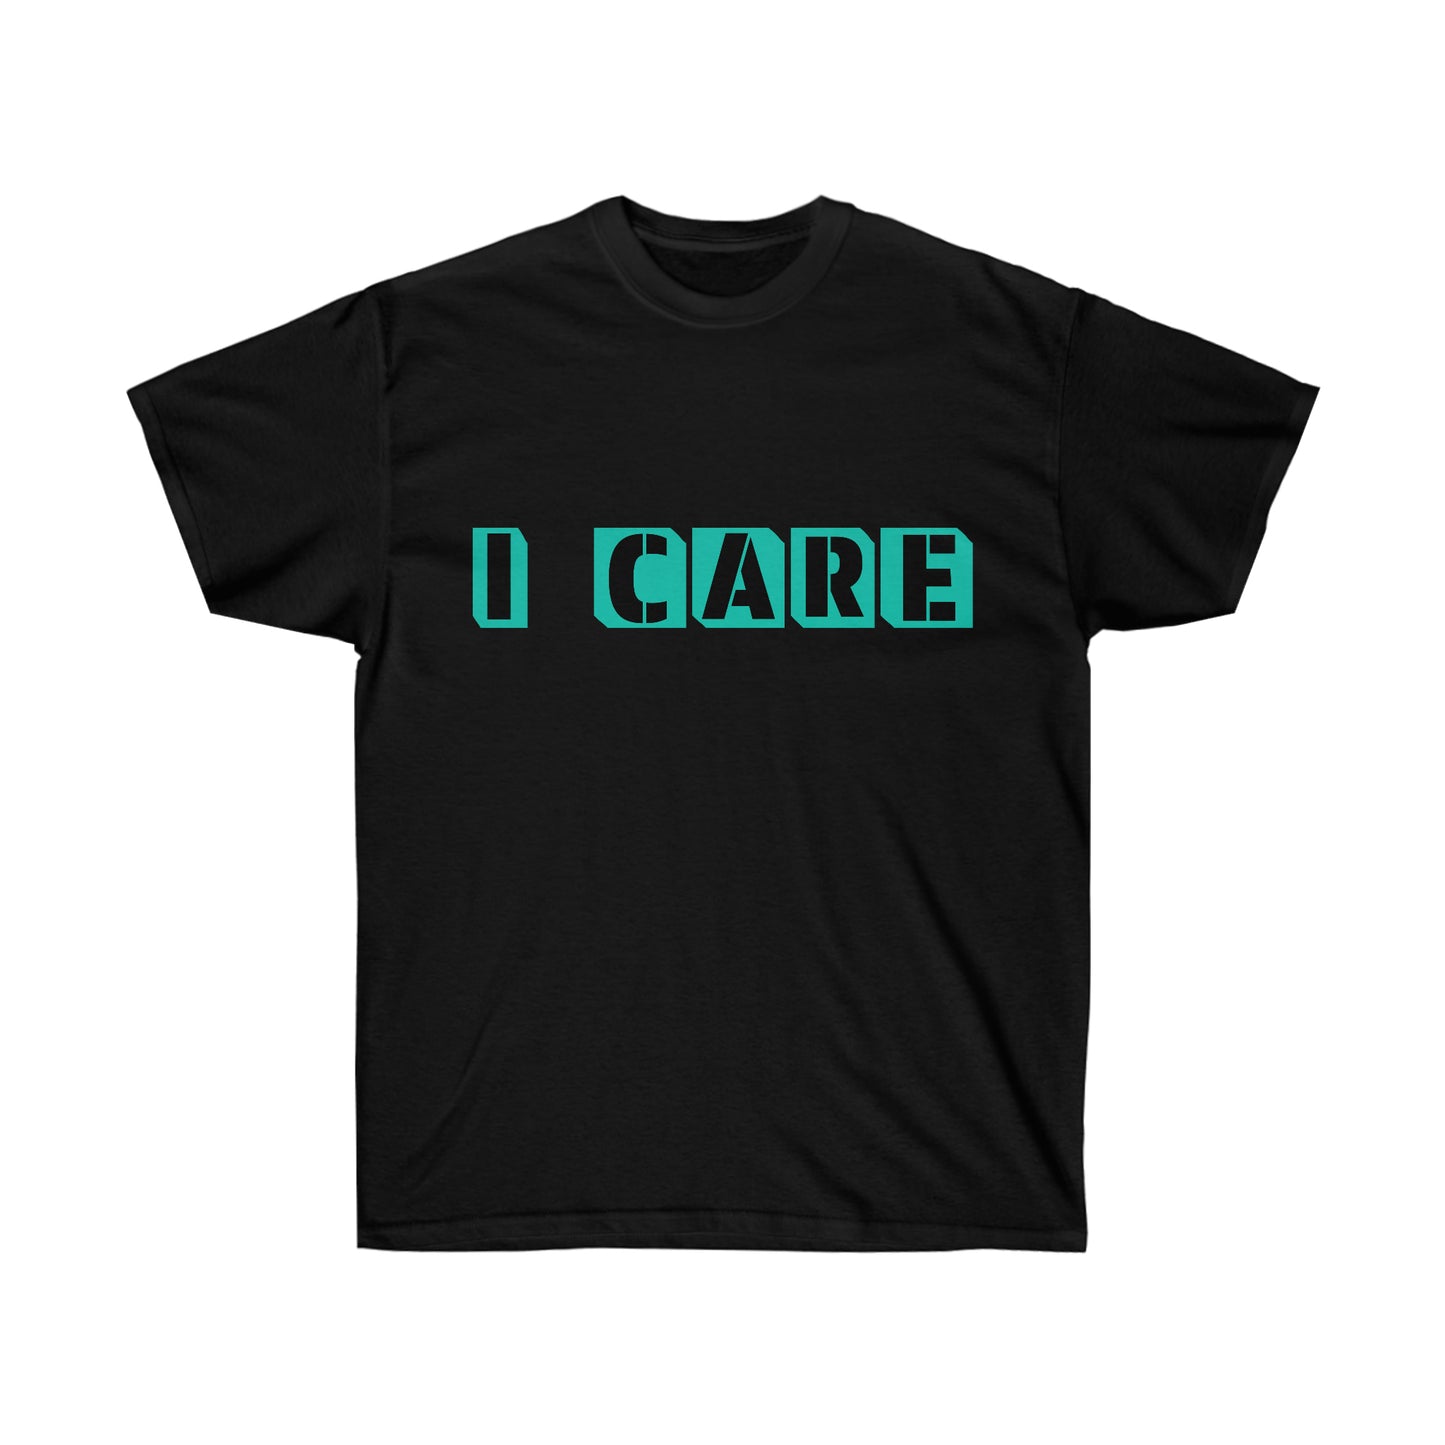 I care Black T shirt